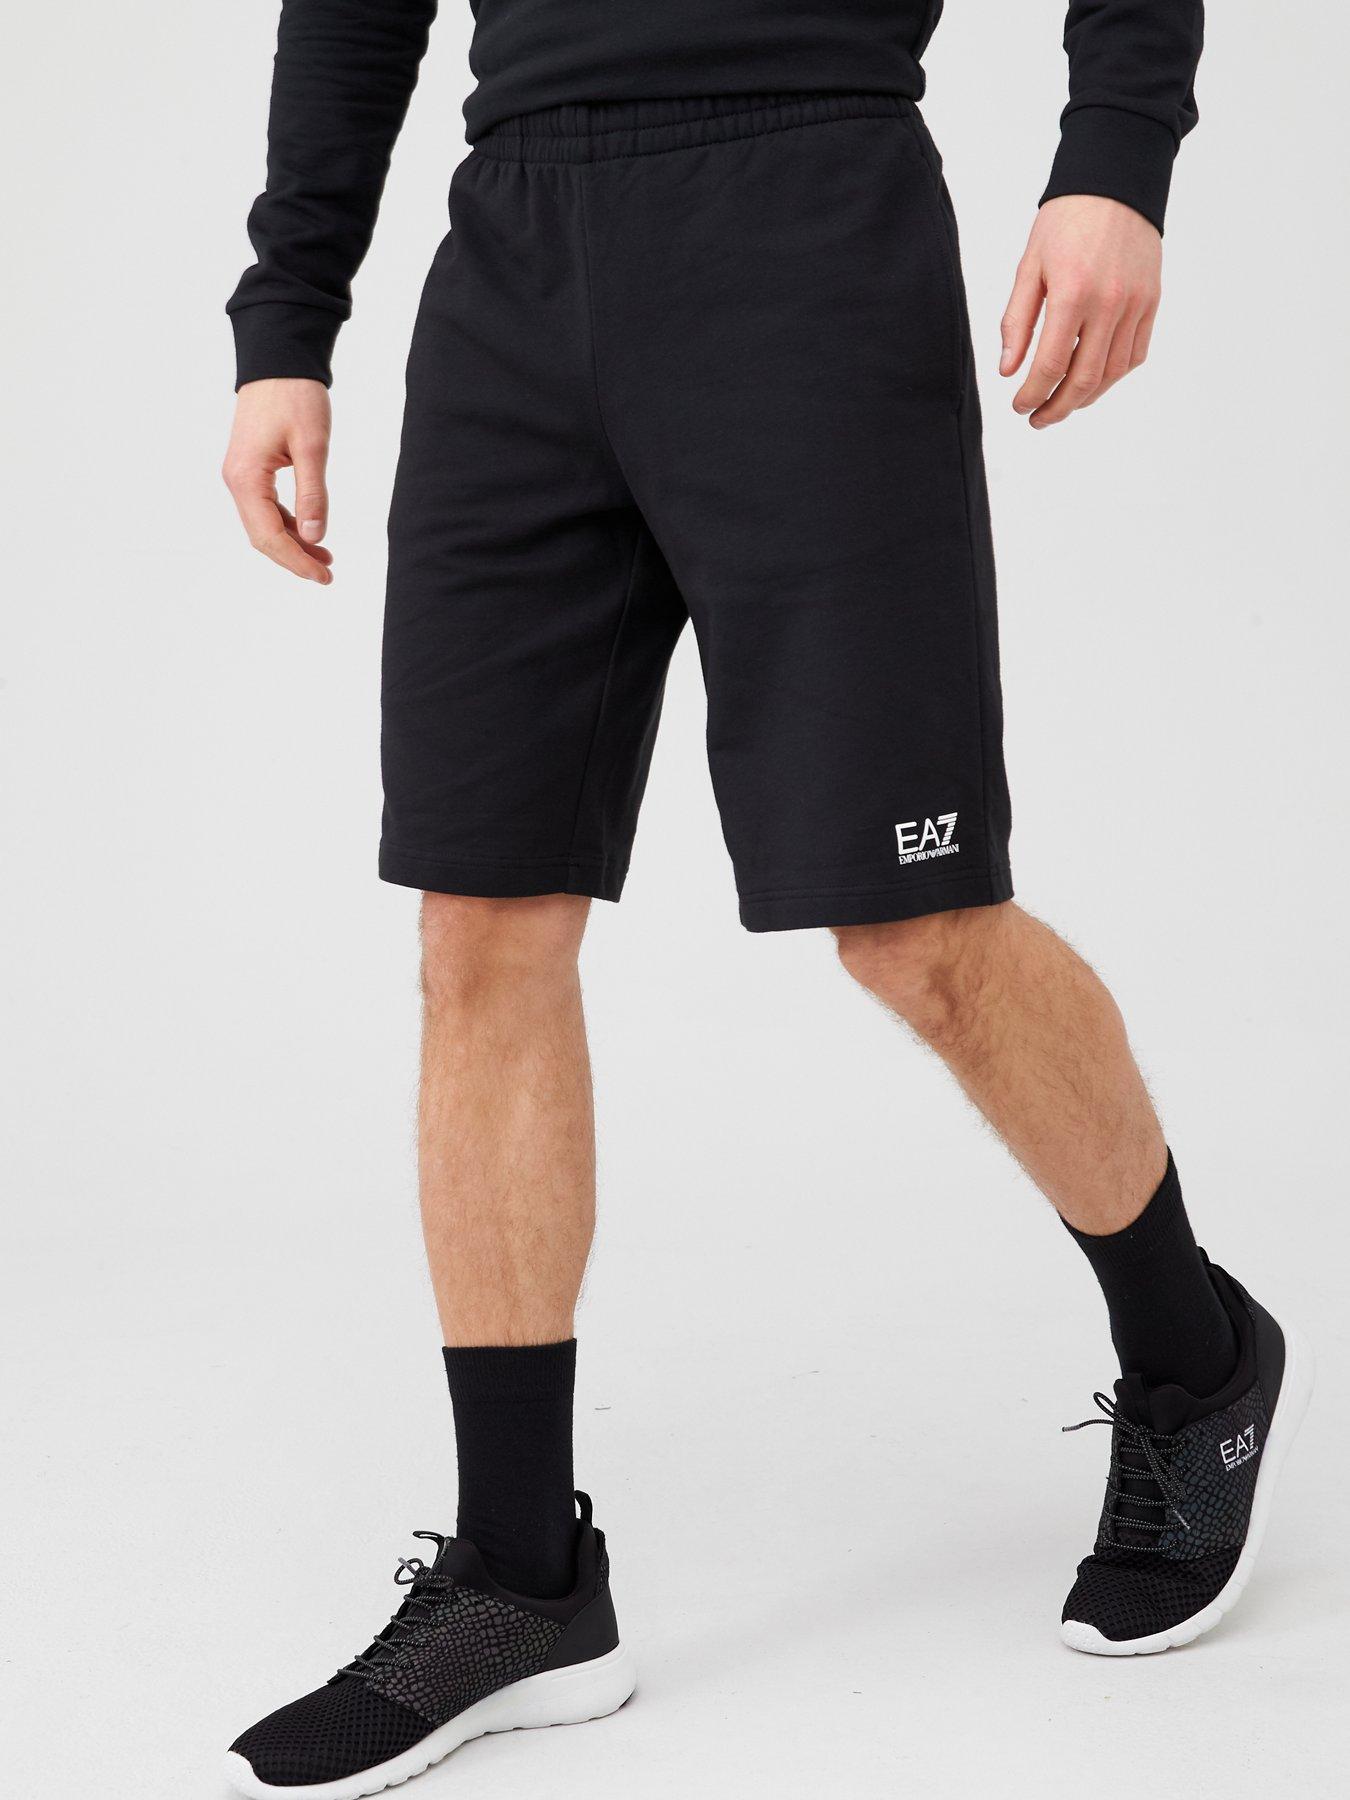 ea7 shorts black